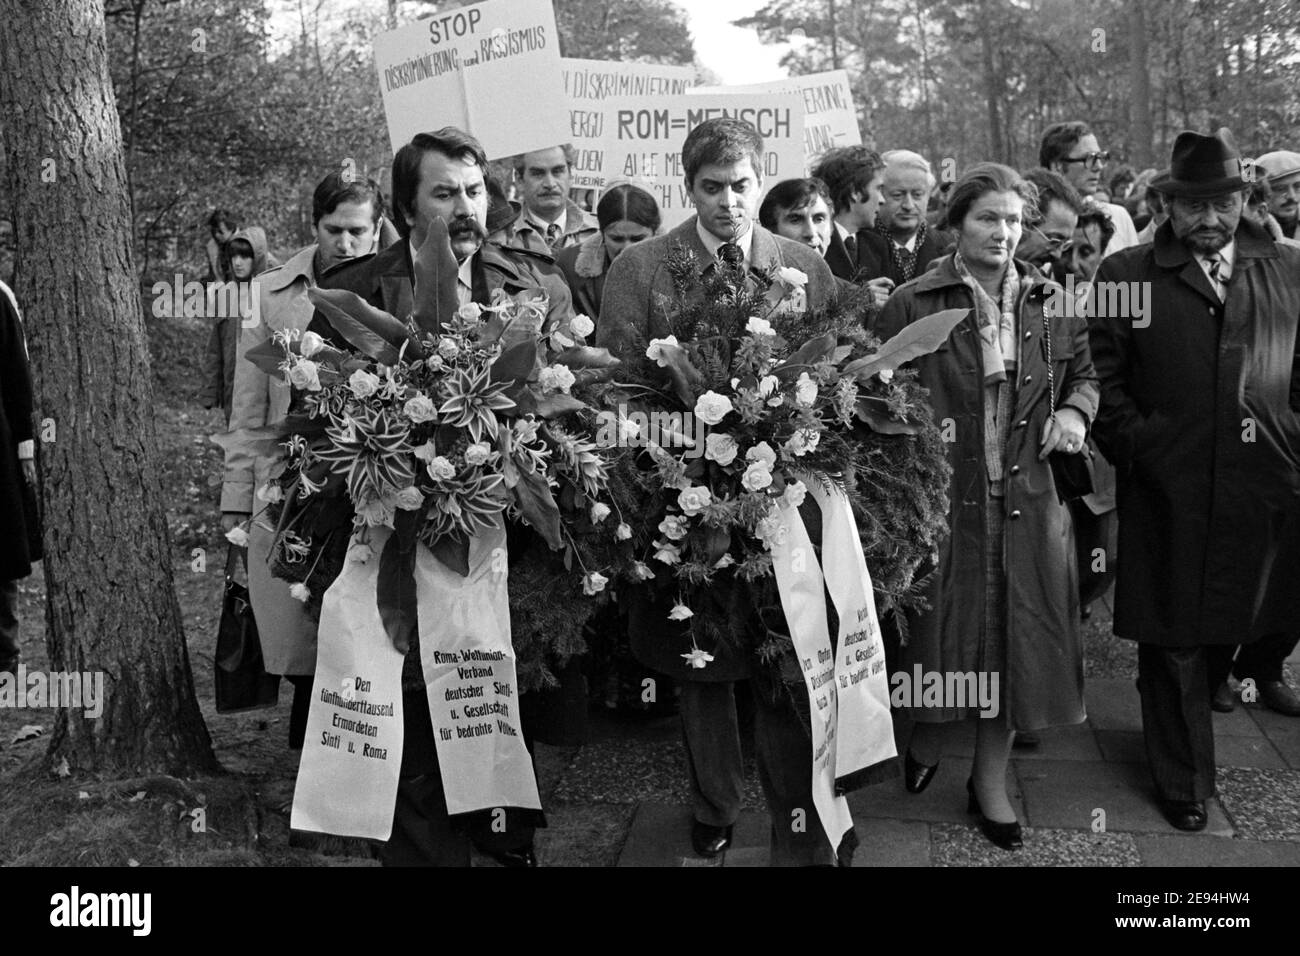 Bergen-Belsen, Germania, 27 ottobre 1979: SIMONE VEIL (2° da destra, ex detenuto nel campo di concentramento di Bergen-Belsen e attualmente Presidente del Parlamento europeo) insieme a ROM ROSE (2° da sinistra). La cerimonia di posa della corona il 27 ottobre 1979 durante un evento commemorativo per la persecuzione di Sinti e Rom nel terzo Reich nel sito commemorativo del campo di concentramento di Bergen-Belsen. Foto Stock